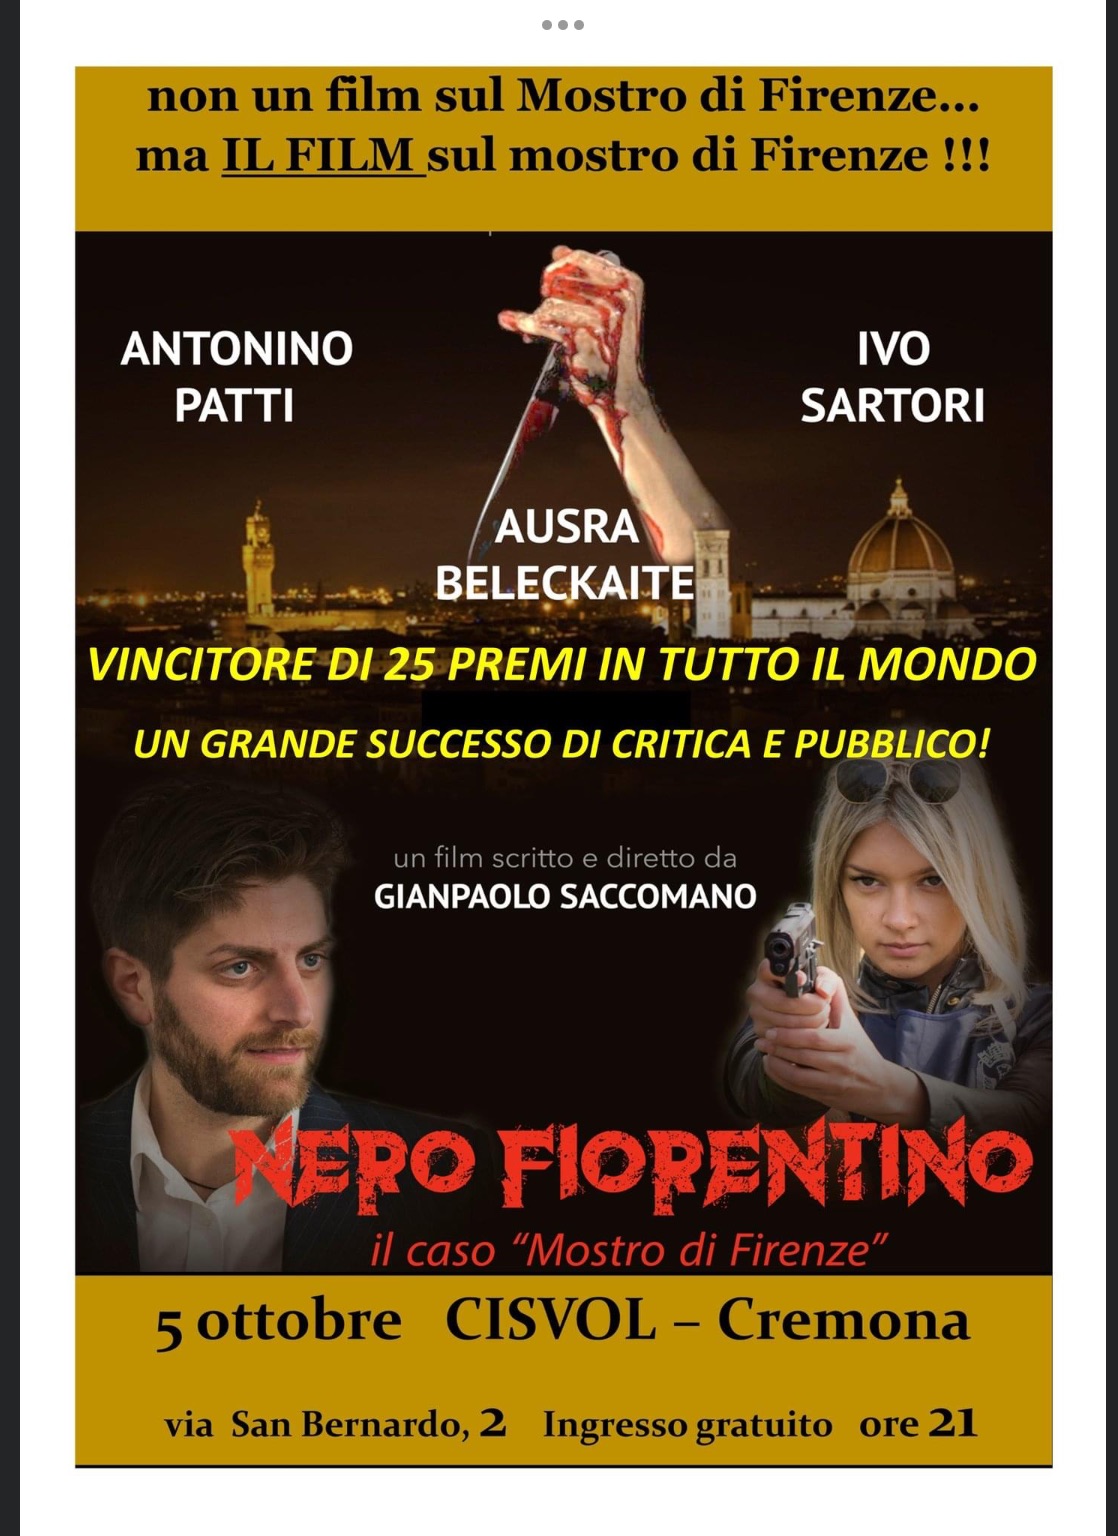 Nero Fiorentino, il film sul Mostro di Firenze di Saccomano, selezionato per il  Jean Luc Godard Awards 2022